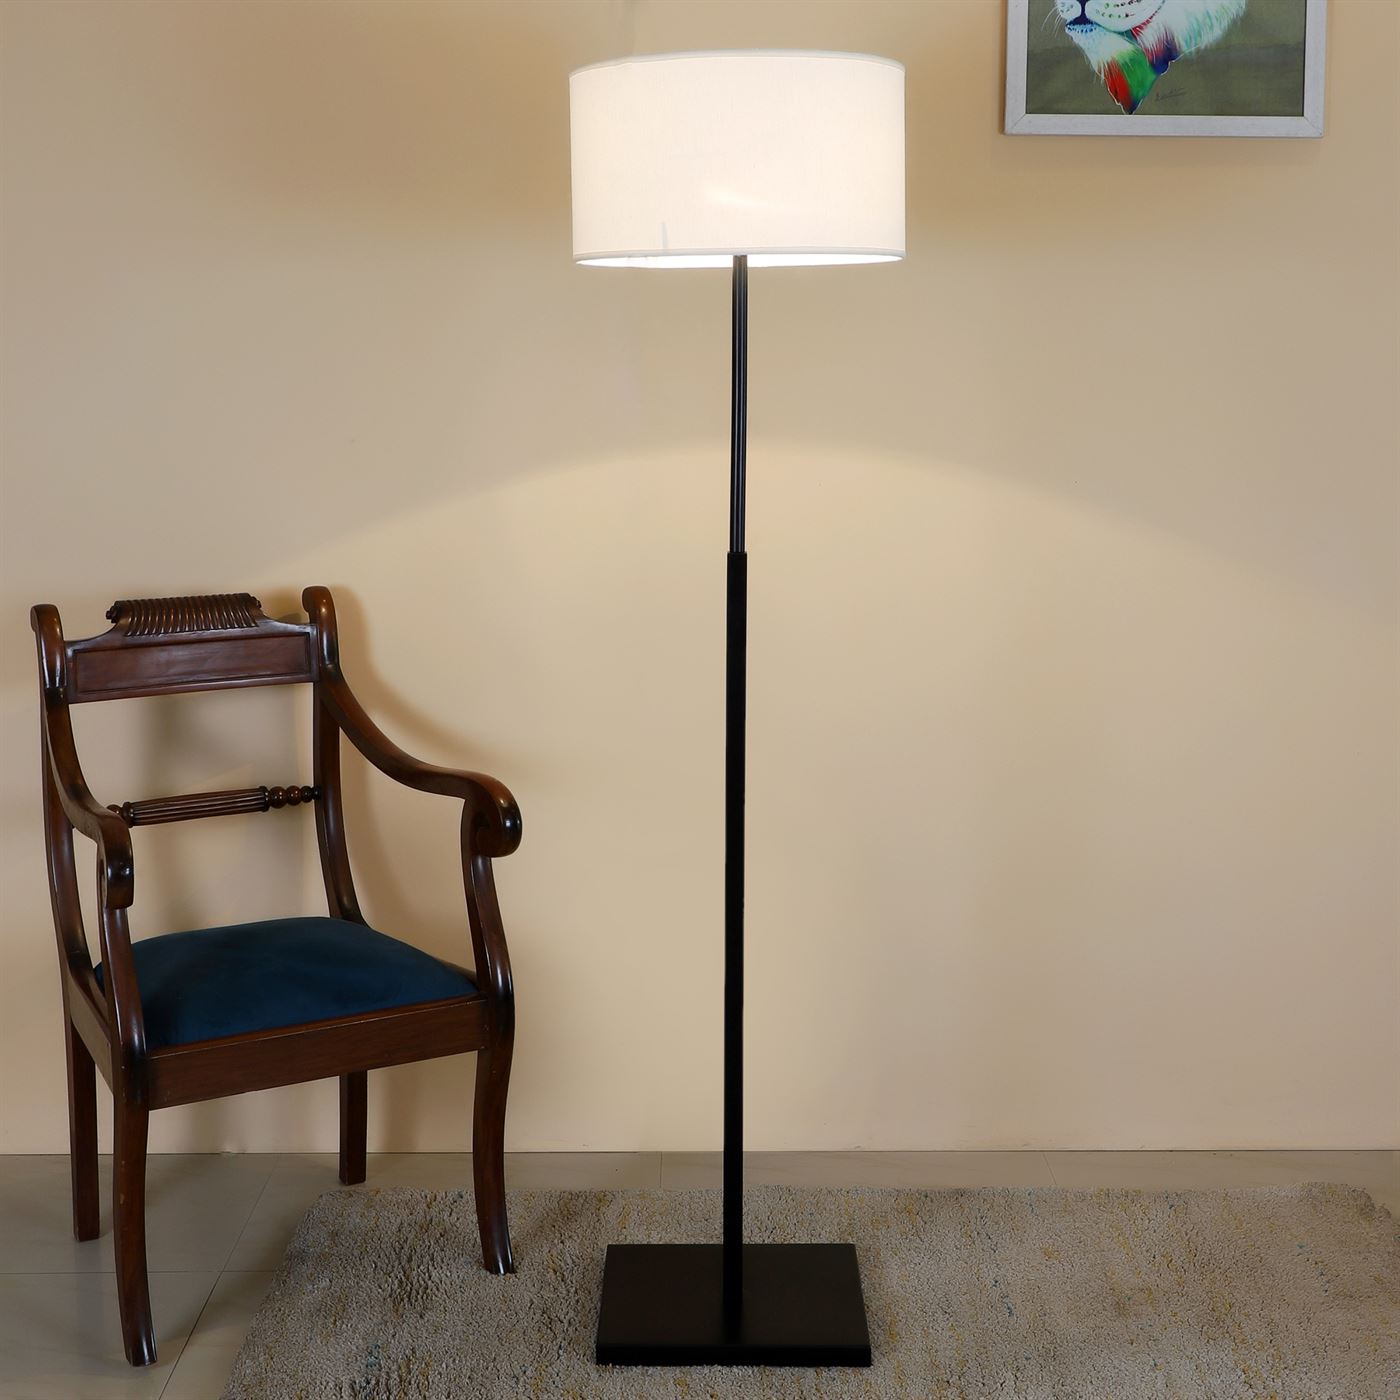 Malin 1 Floor Lamp